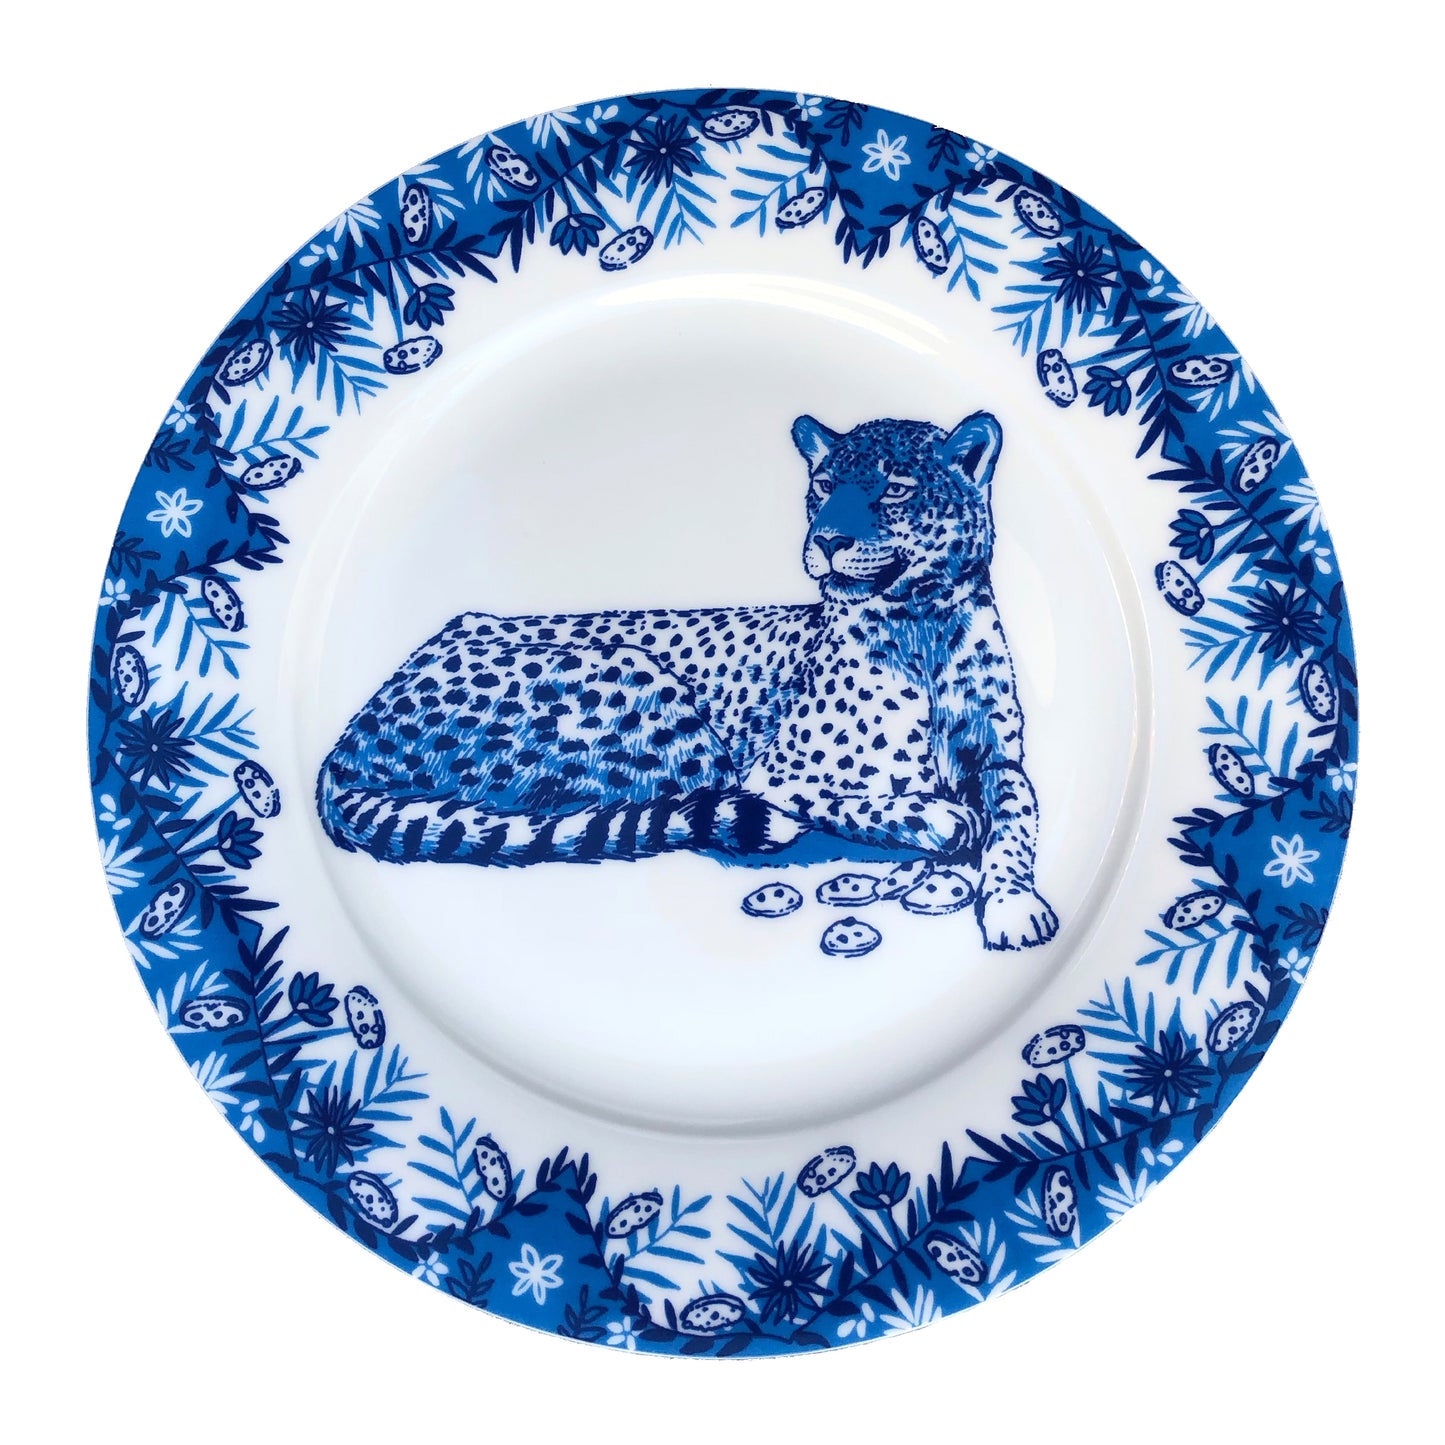 Leopard Willow pattern side plate